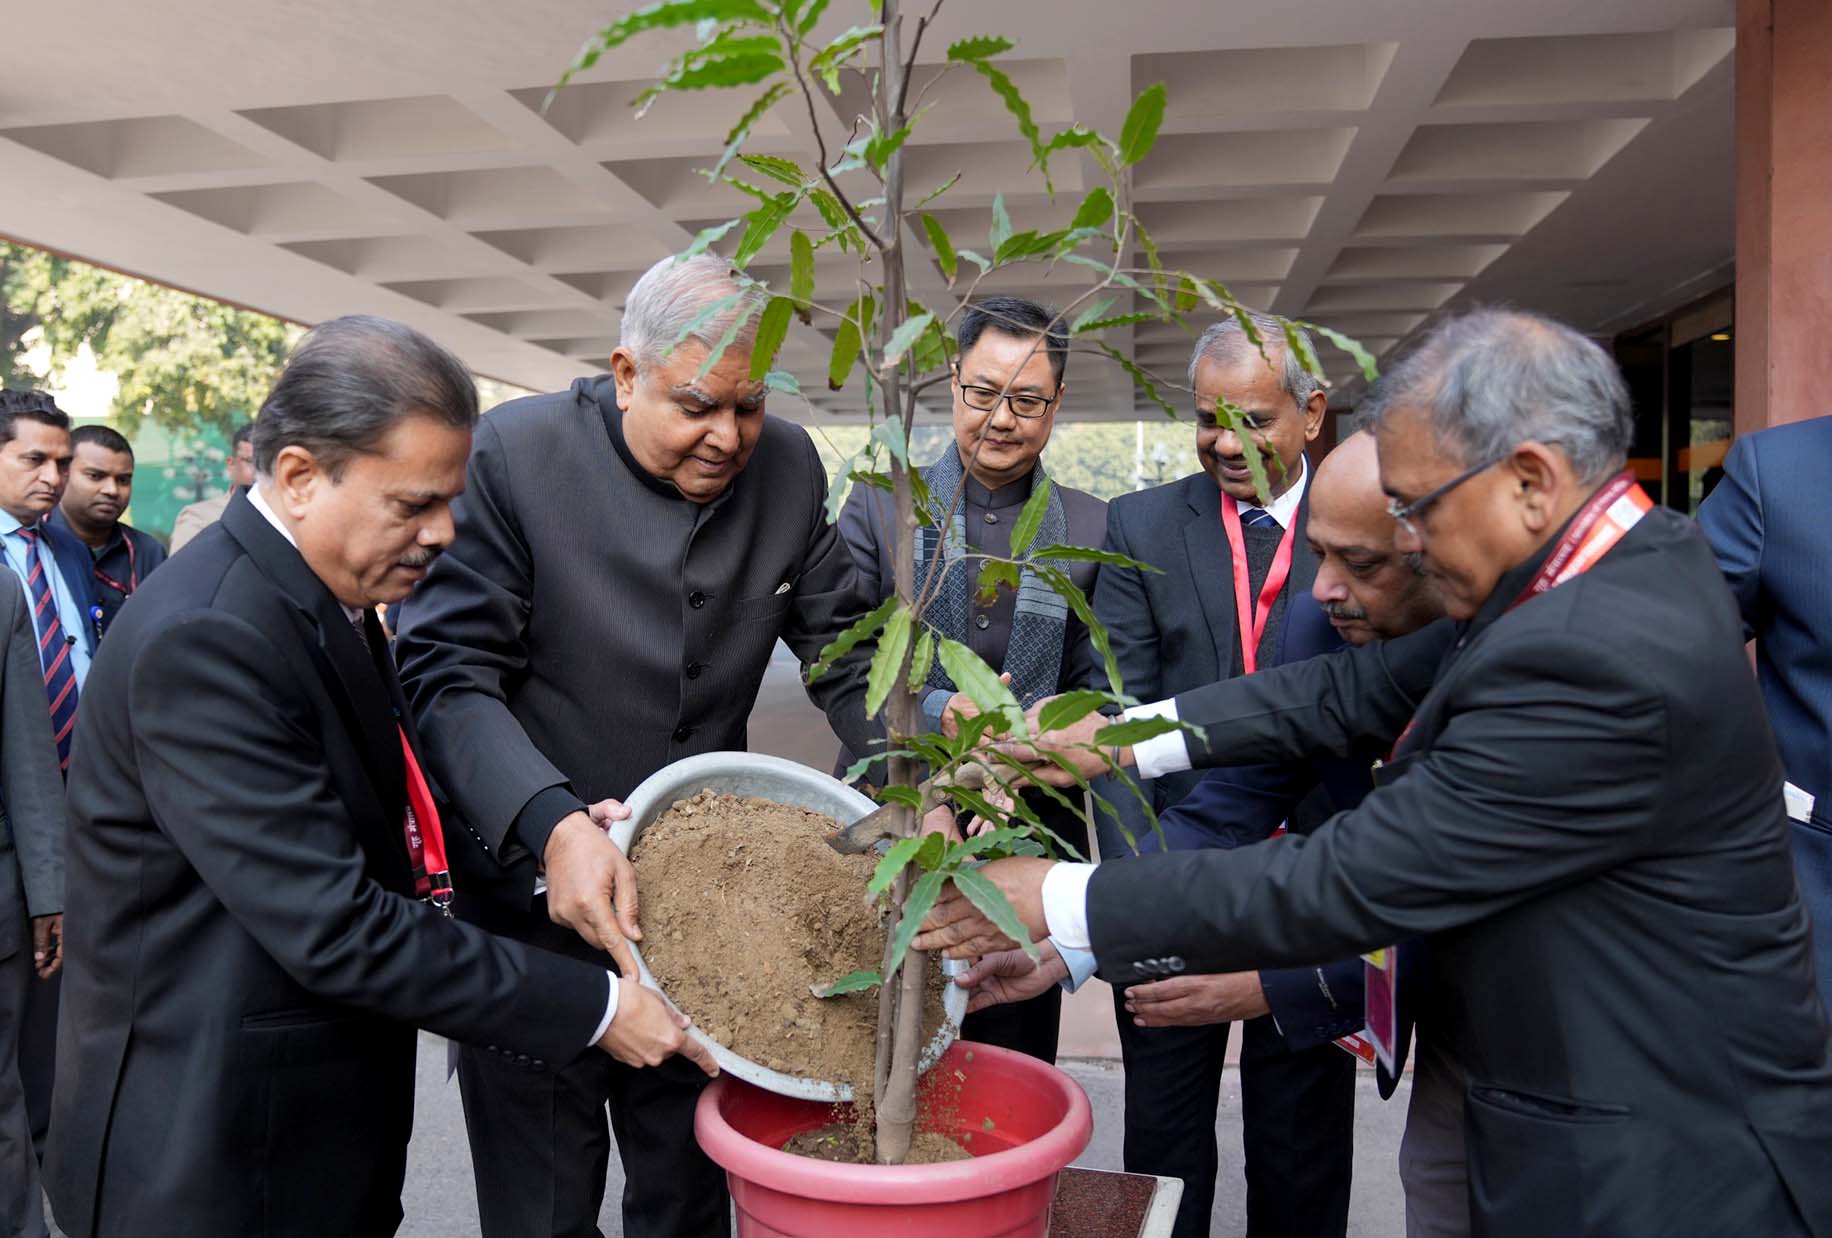 15 जनवरी 2024 को विज्ञान भवन, नई दिल्ली में भारतीय मौसम विज्ञान विभाग के 150 वर्ष पूर्ण होने के उपलक्ष्य में आयोजित समारोह के दौरान पौधारोपण करते हुए उपराष्ट्रपति श्री जगदीप धनखड़।